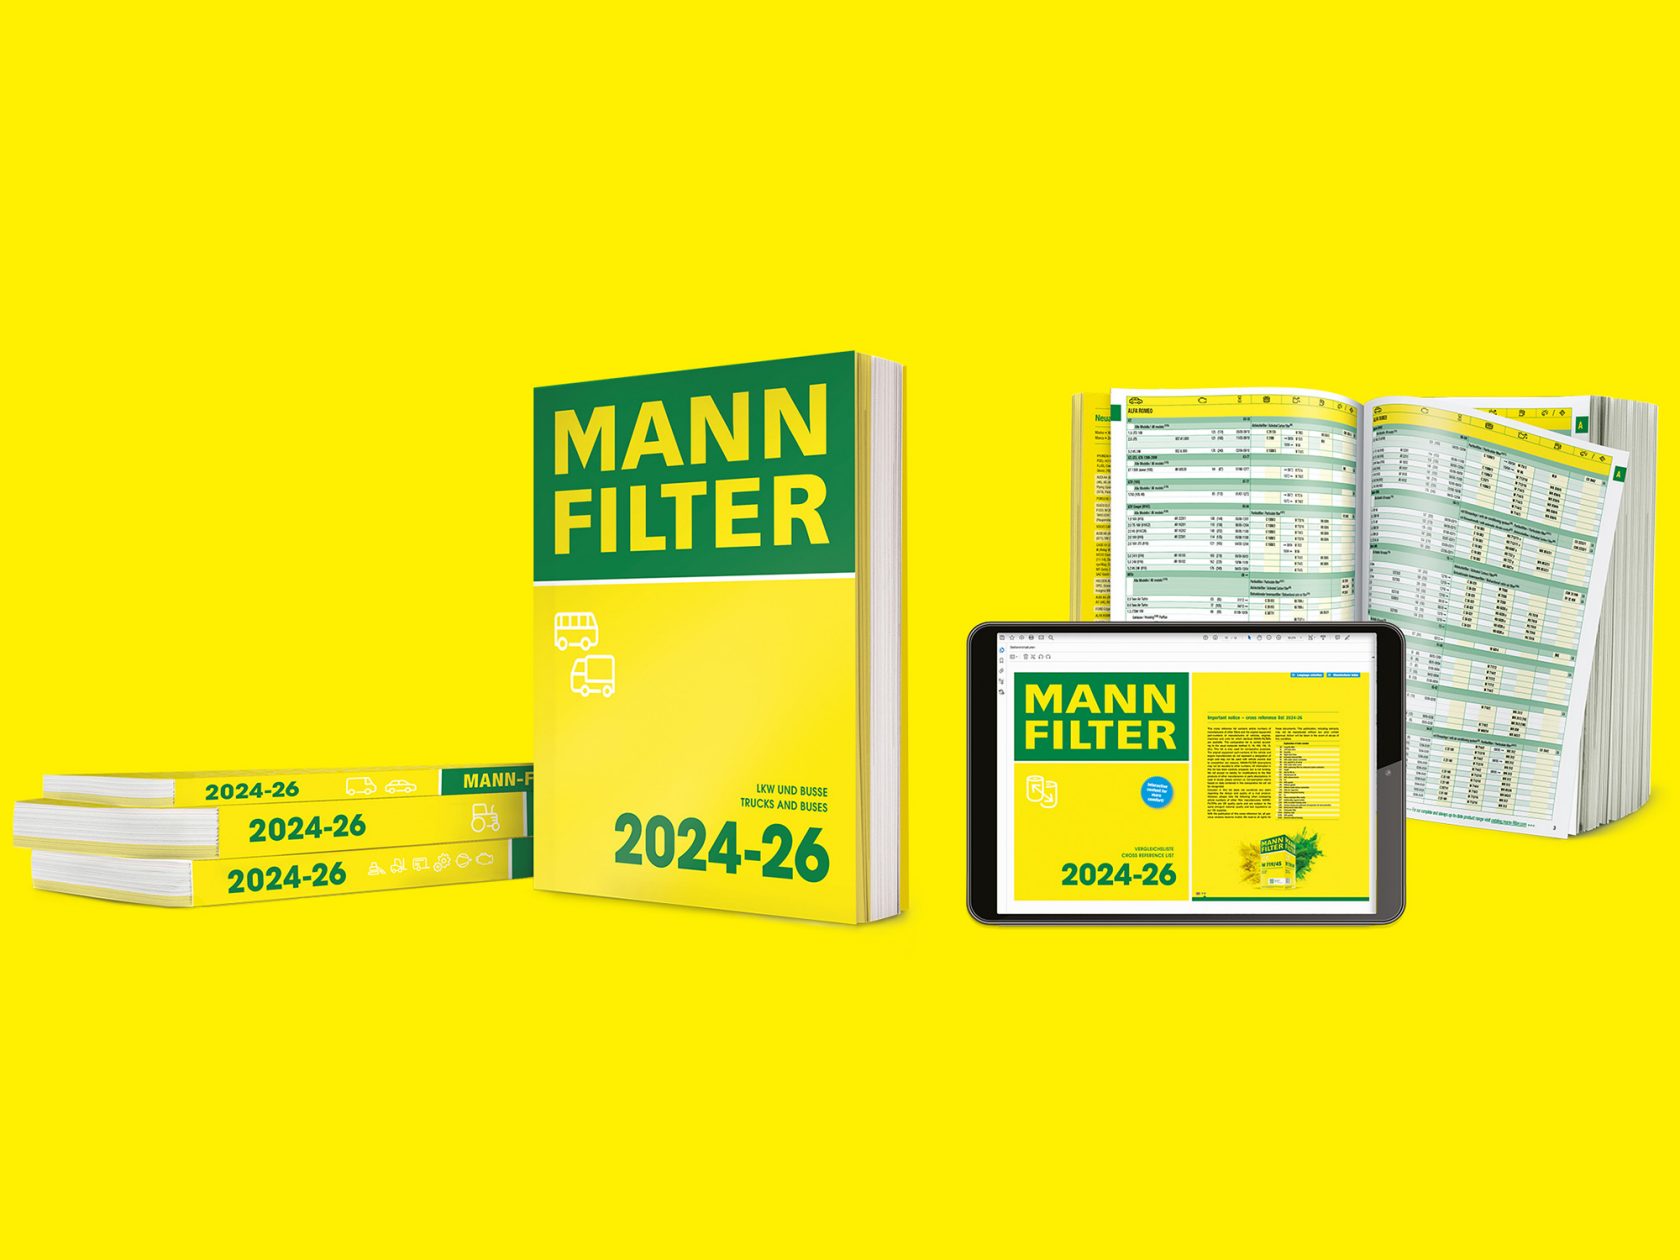 Διαφορετικές εκδόσεις του καταλόγου MANN-FILTER: online και pdf.